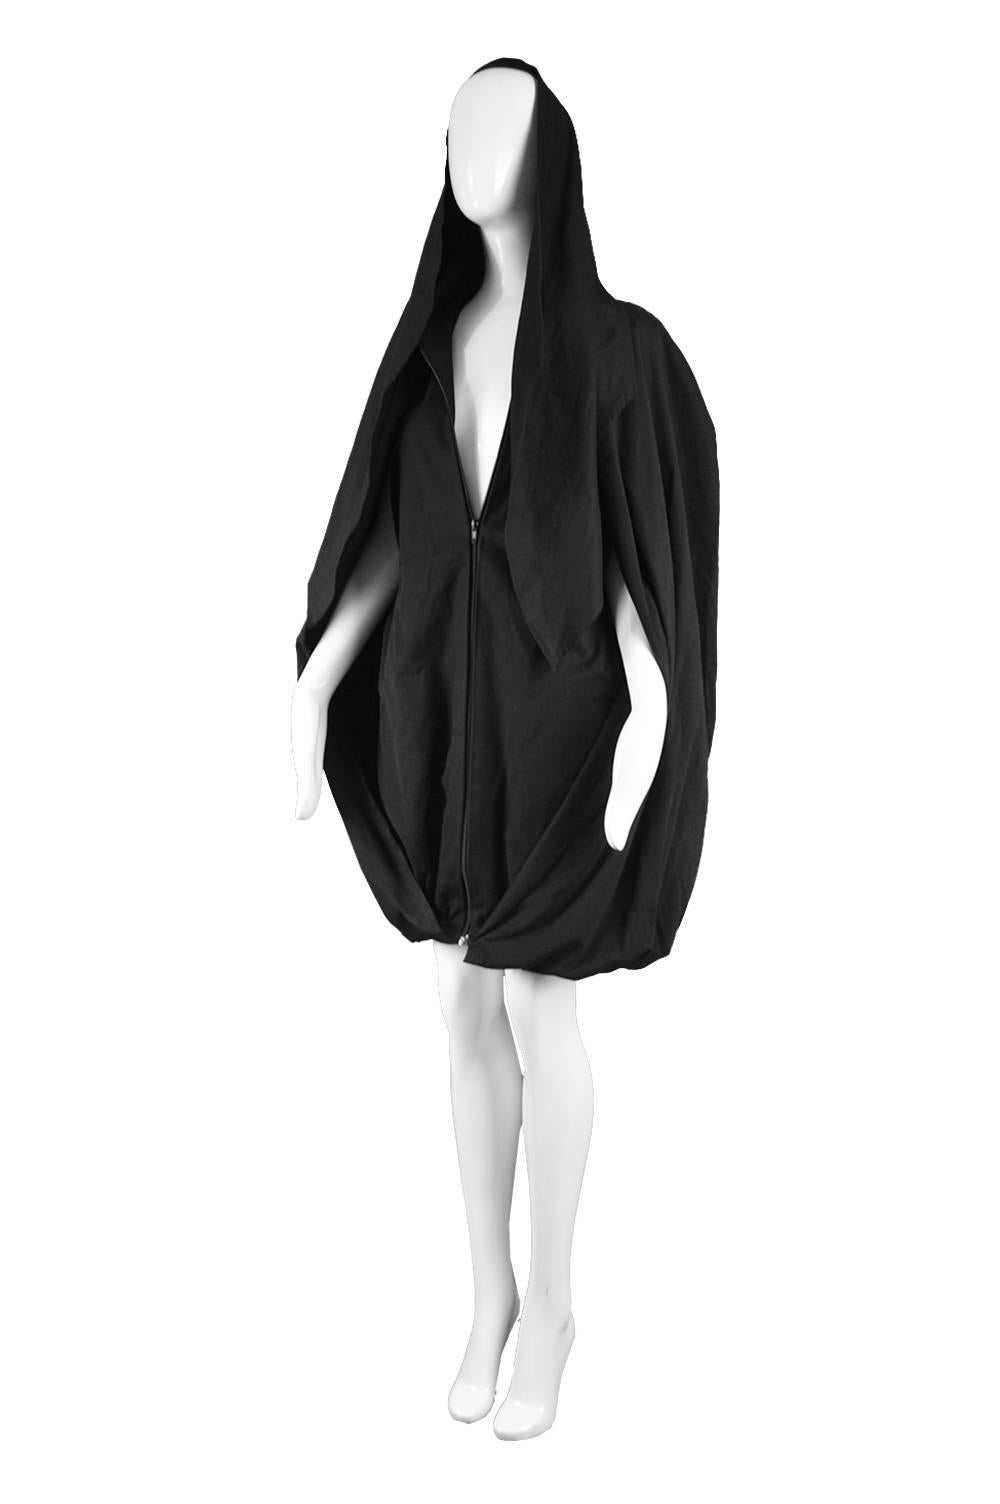 Women's Sybilla Vintage 1980s Avant Garde Architectural Black Cape Coat Dress 